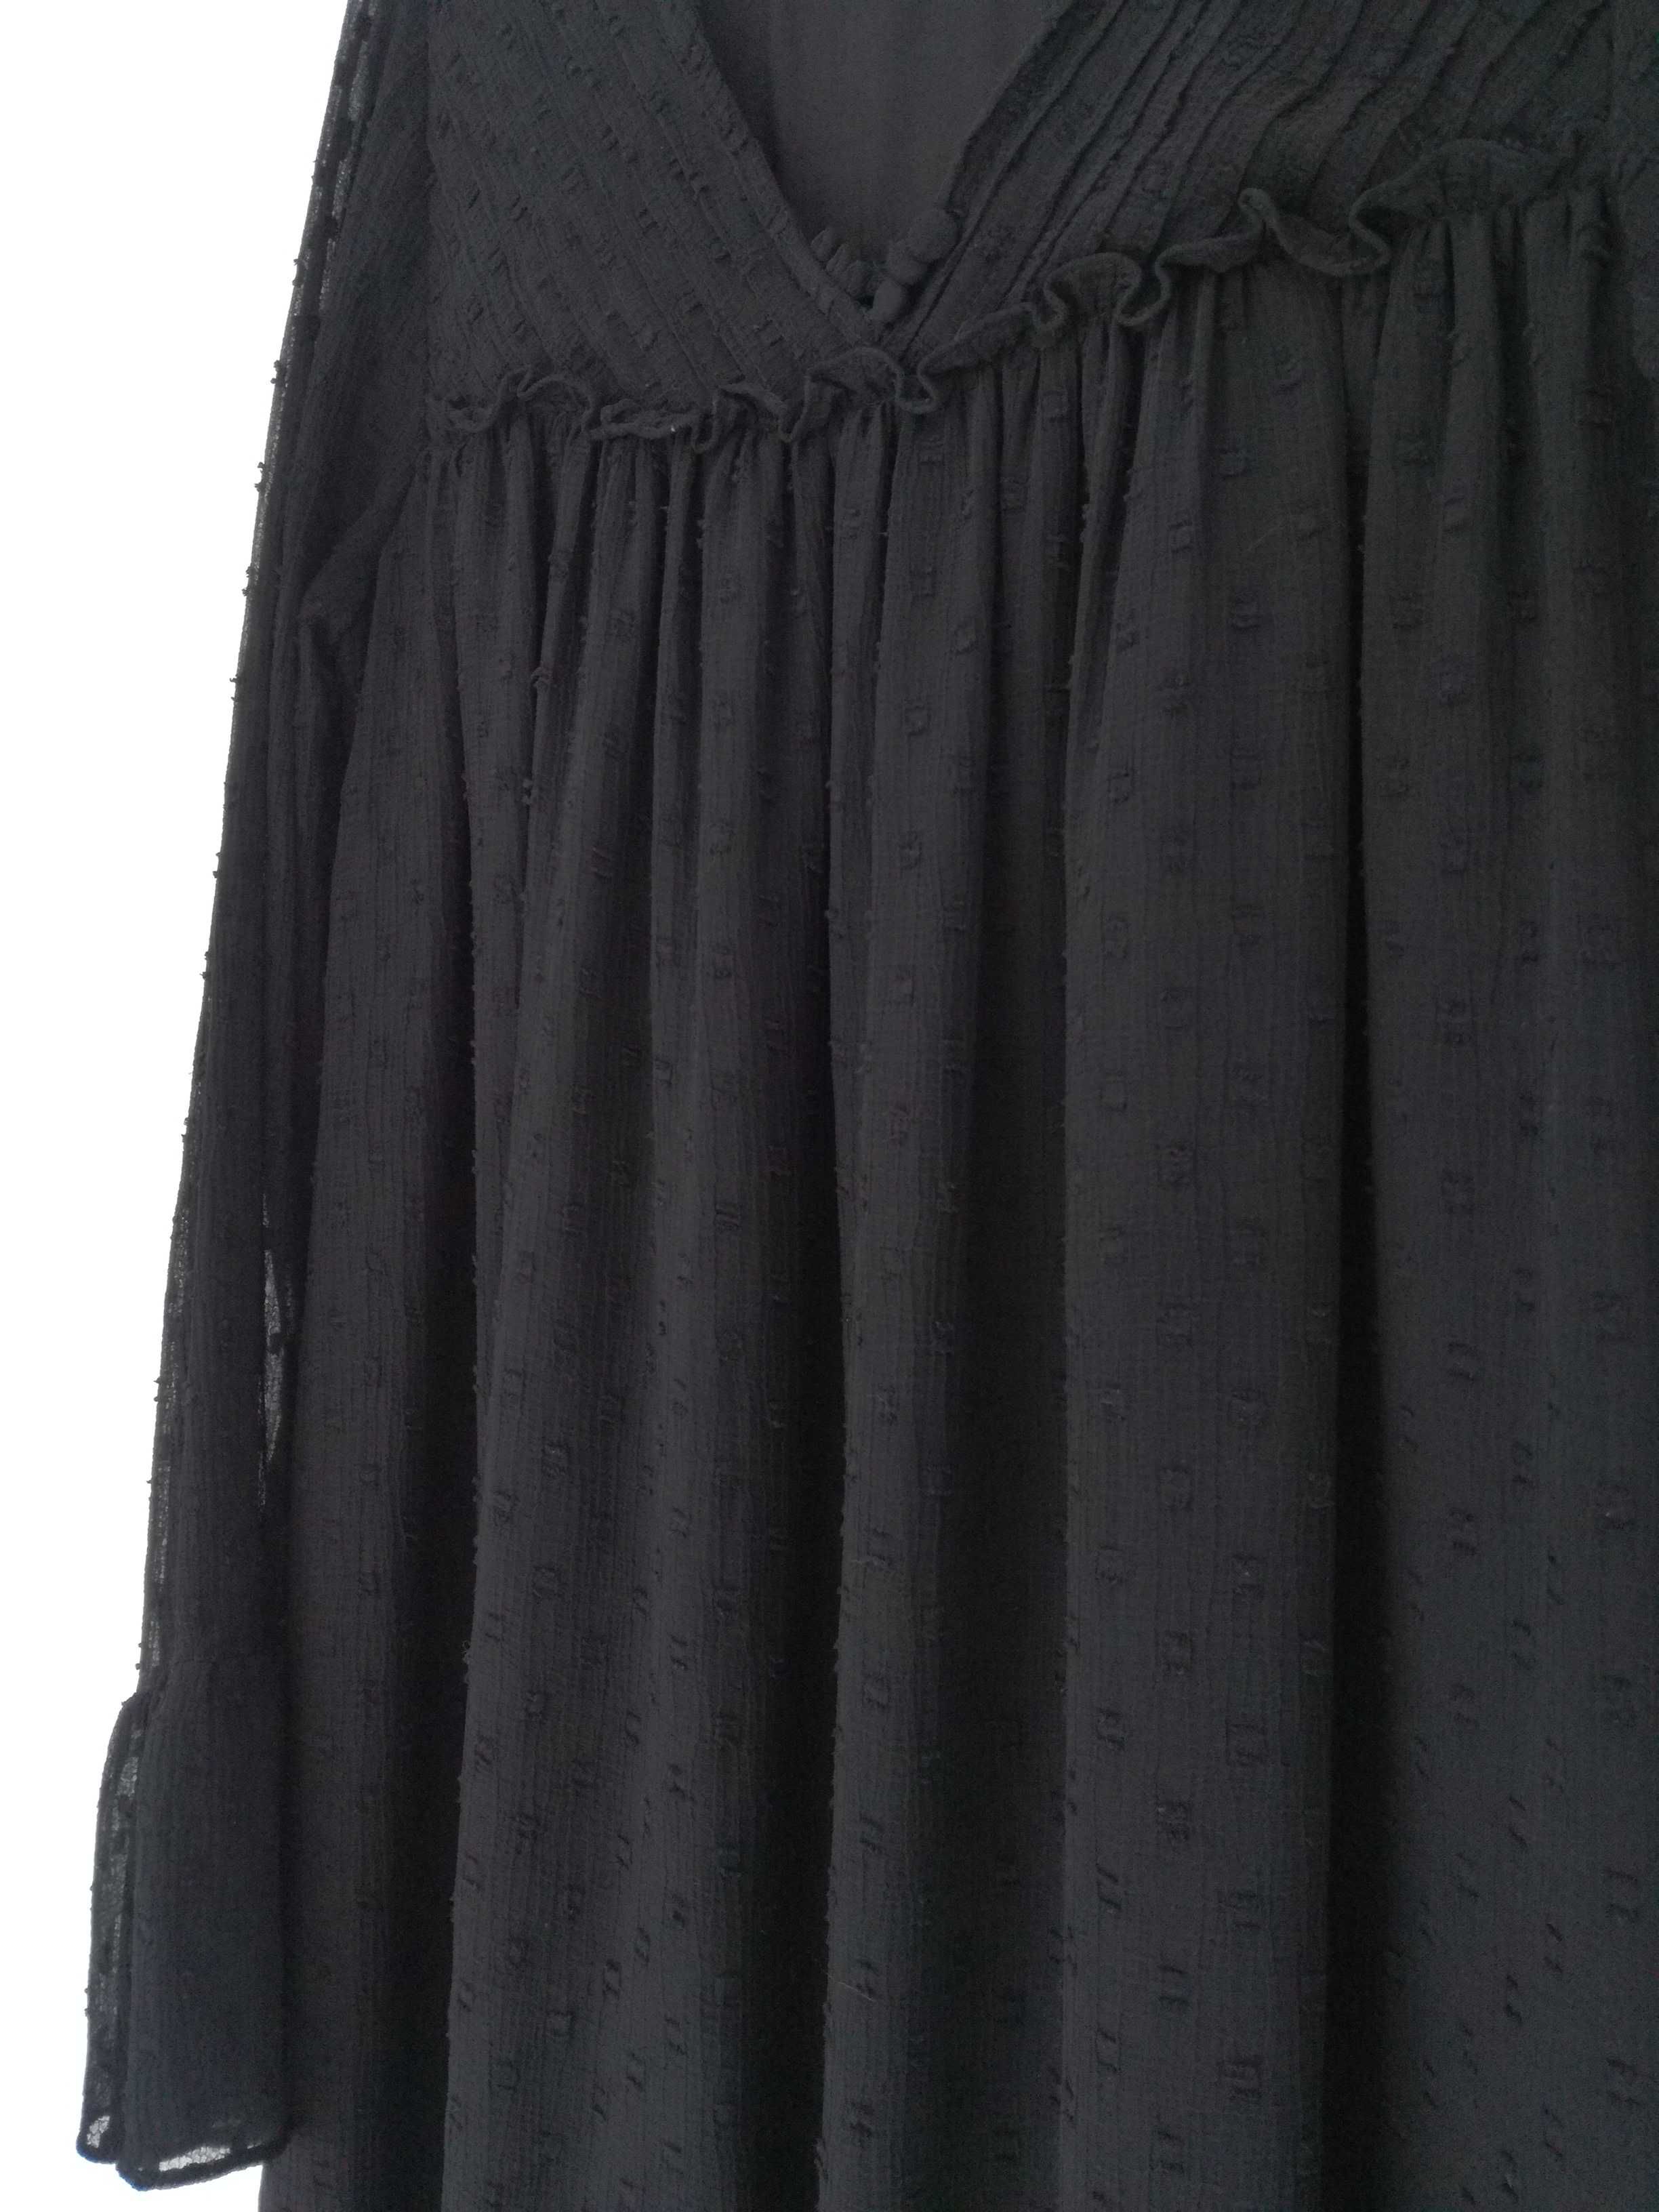 Sukienka z haftem z tkaniny plumeti Zara S mała czarna